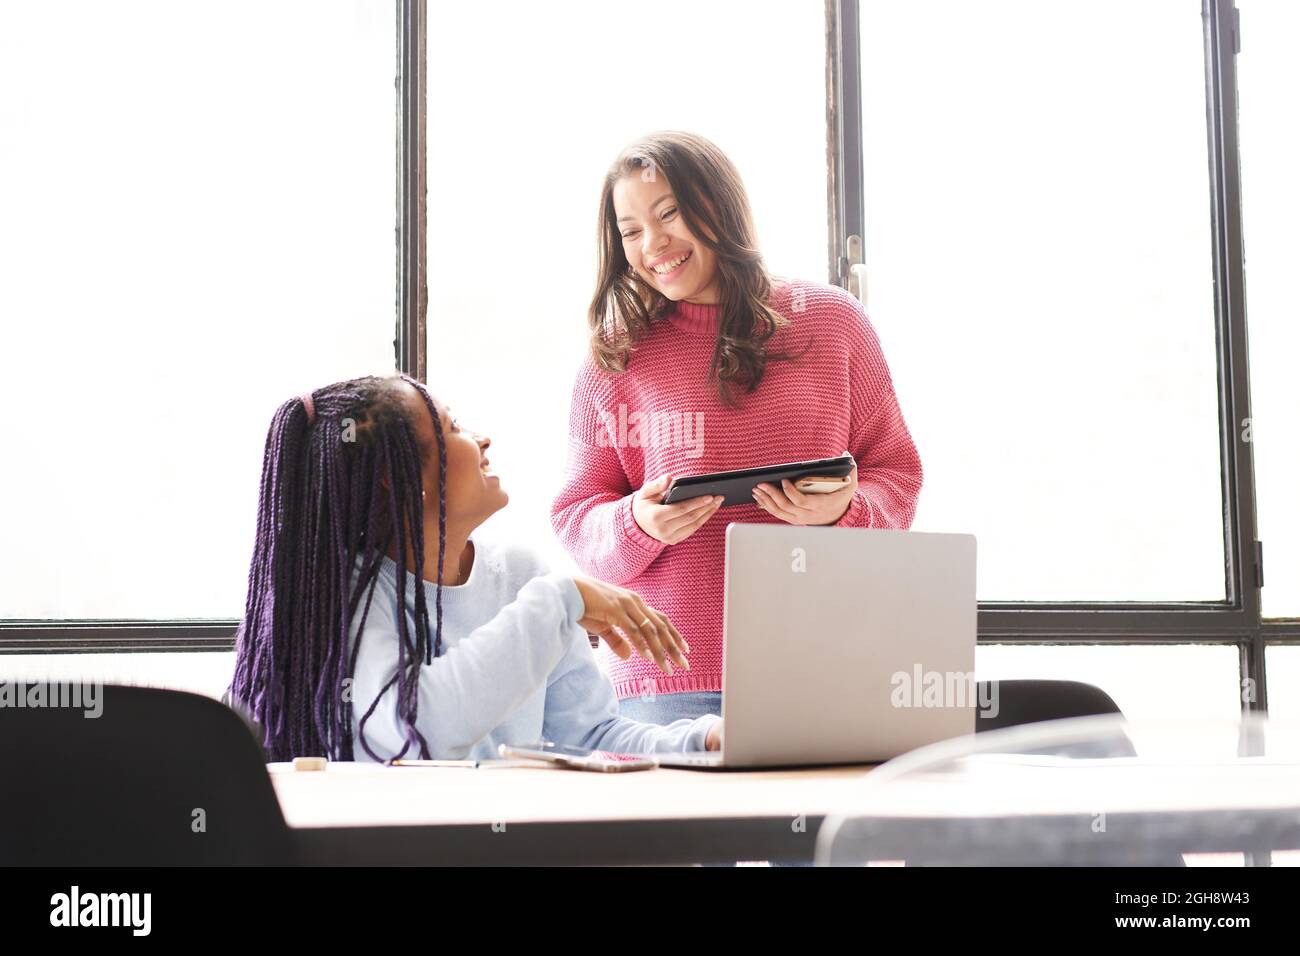 Im Büro: Zwei Frauen arbeiten zusammen. Sie diskutieren Arbeitsprobleme freundlich, während sie auf den Computerbildschirm schauen. Stockfoto